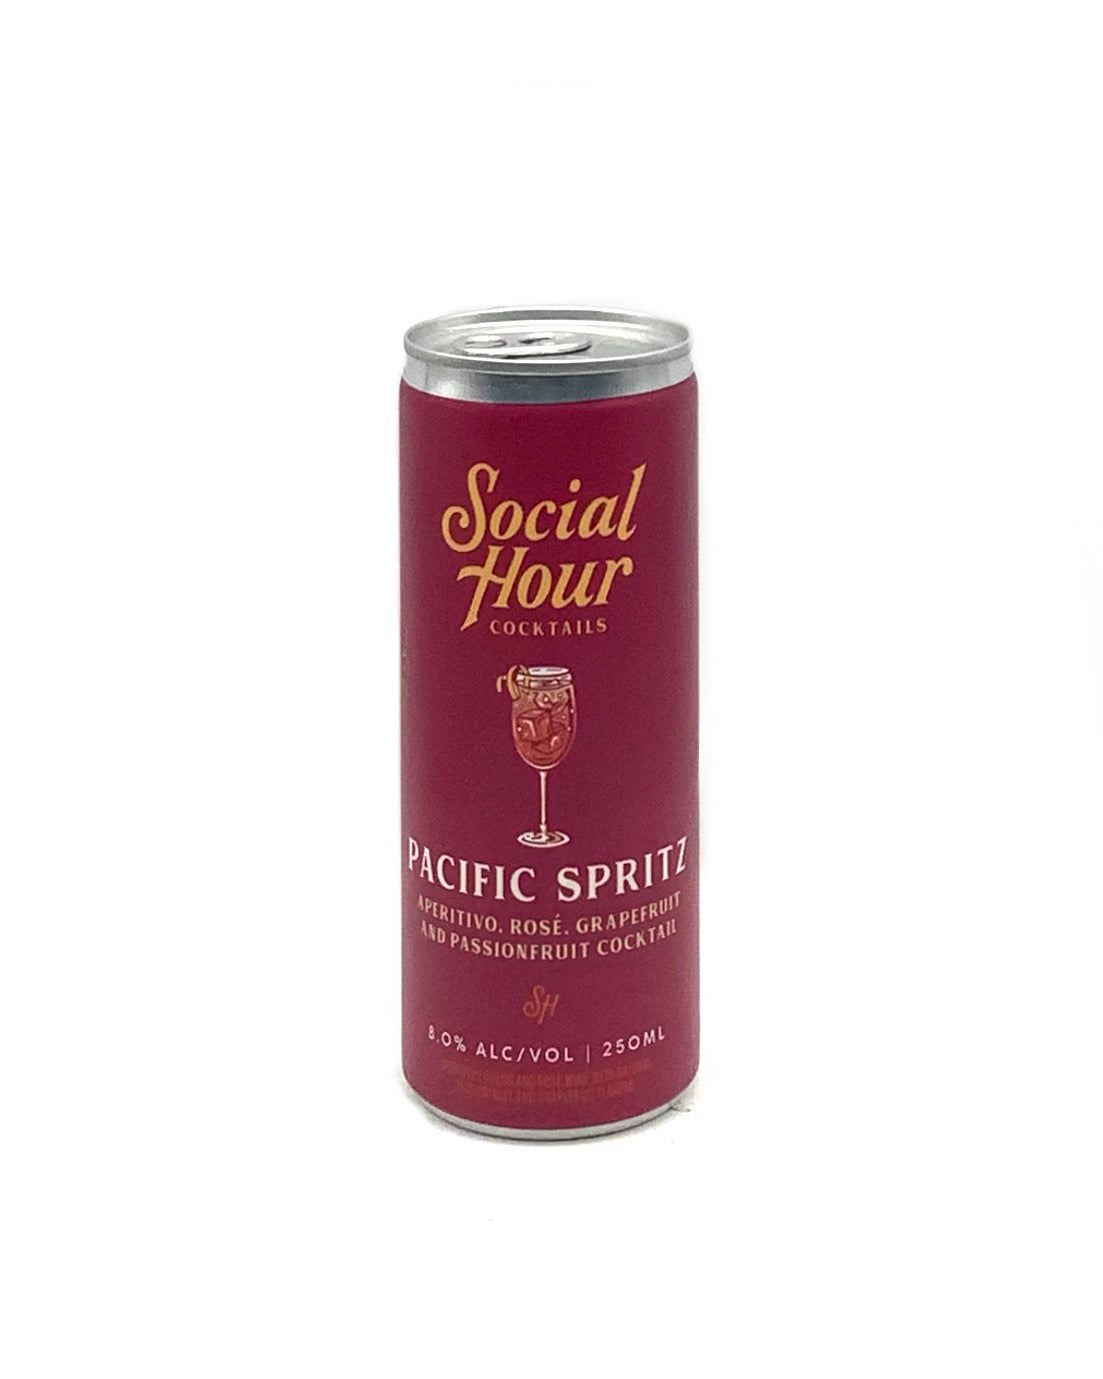 Social Hour Cocktails Pacific Spritz 250ml